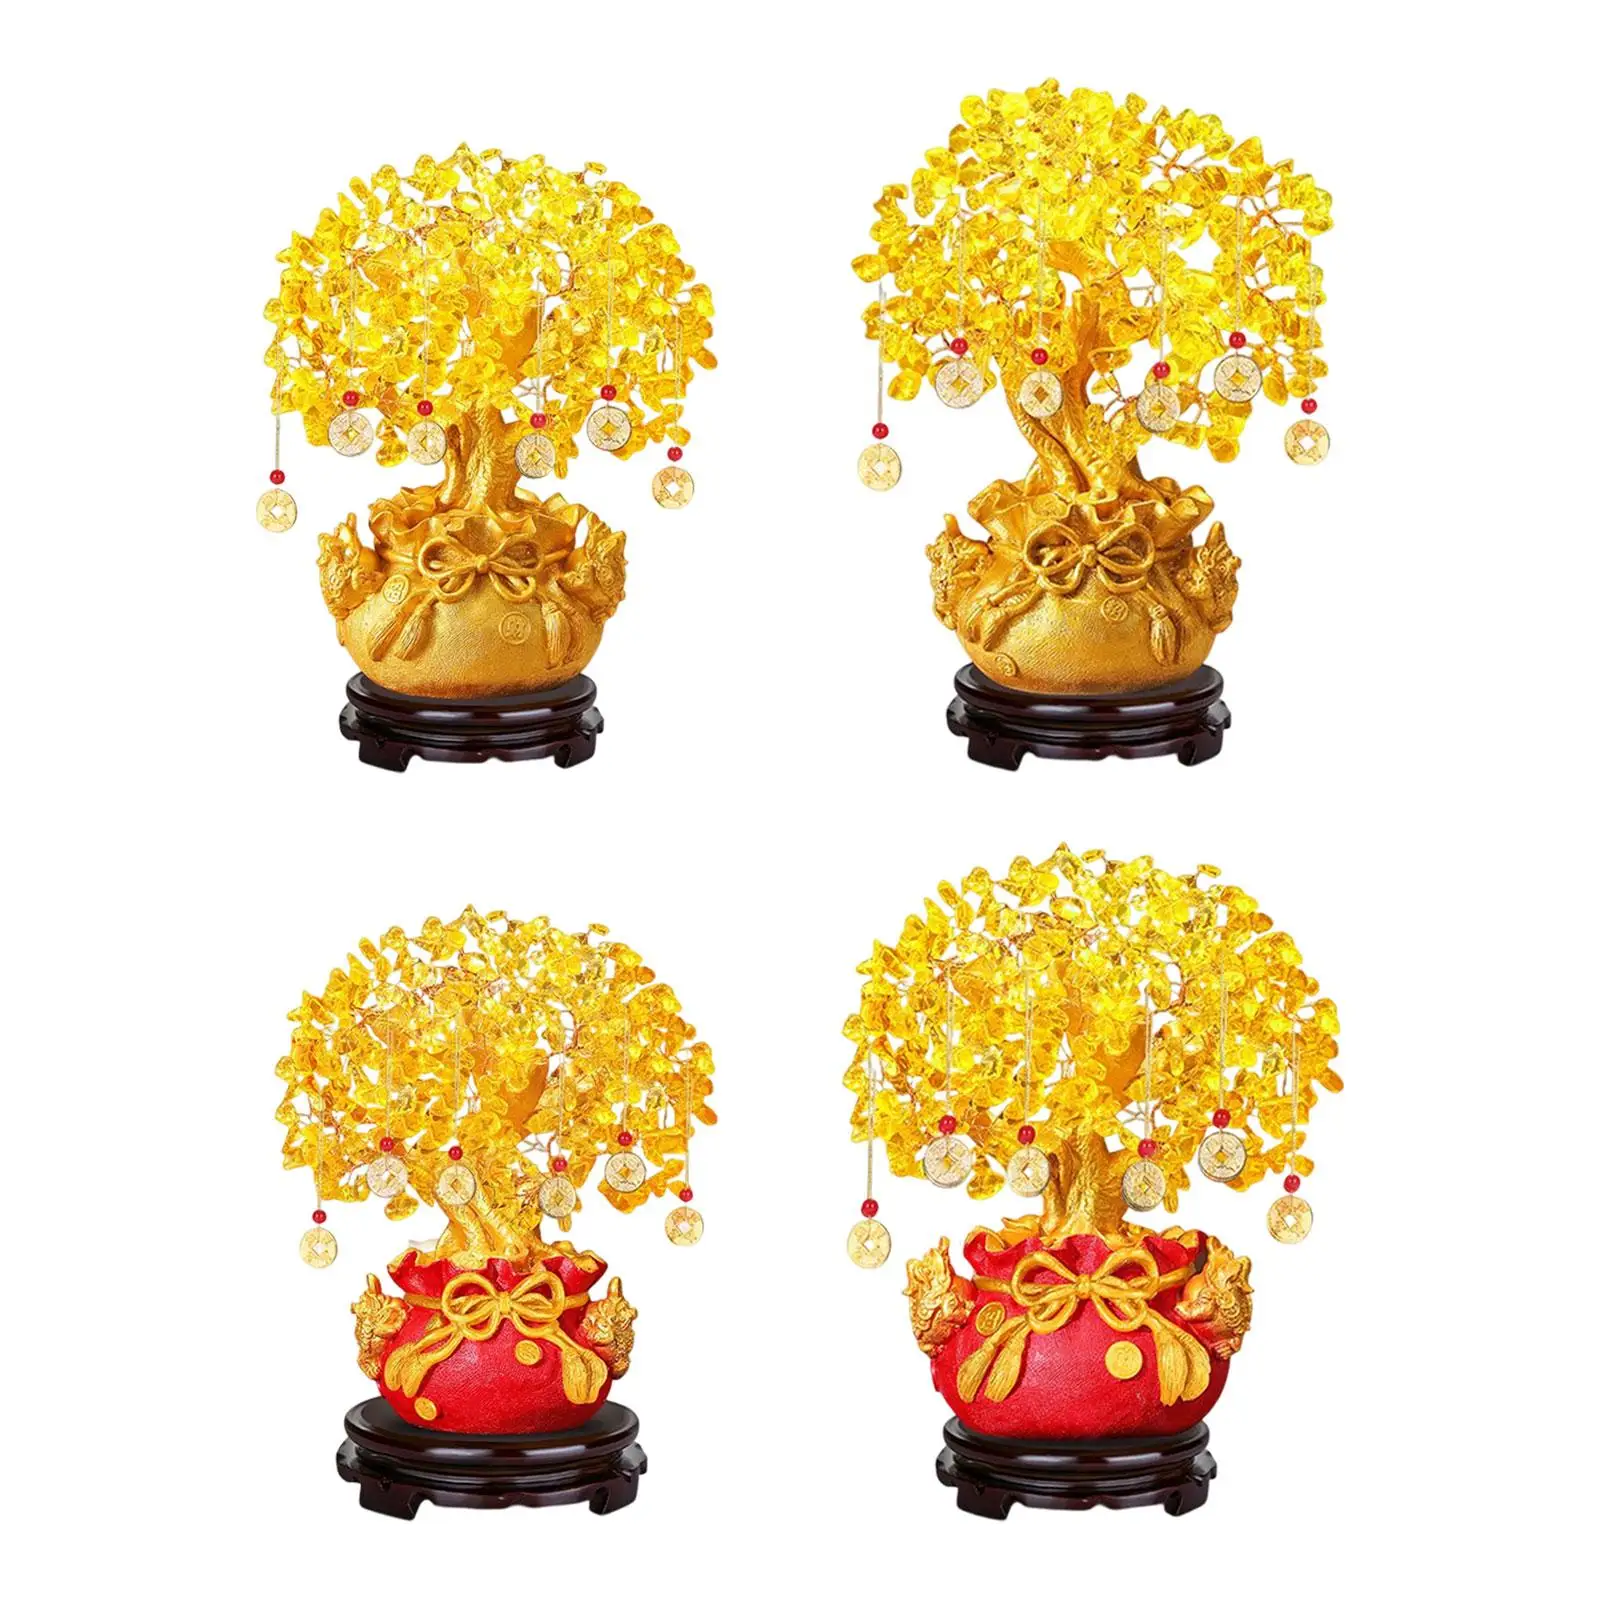 

Китайский новый год коллекция денег Дерево украшение статуи счастливый фэн шуй бонсай украшение для стола вечерние новогодние украшения